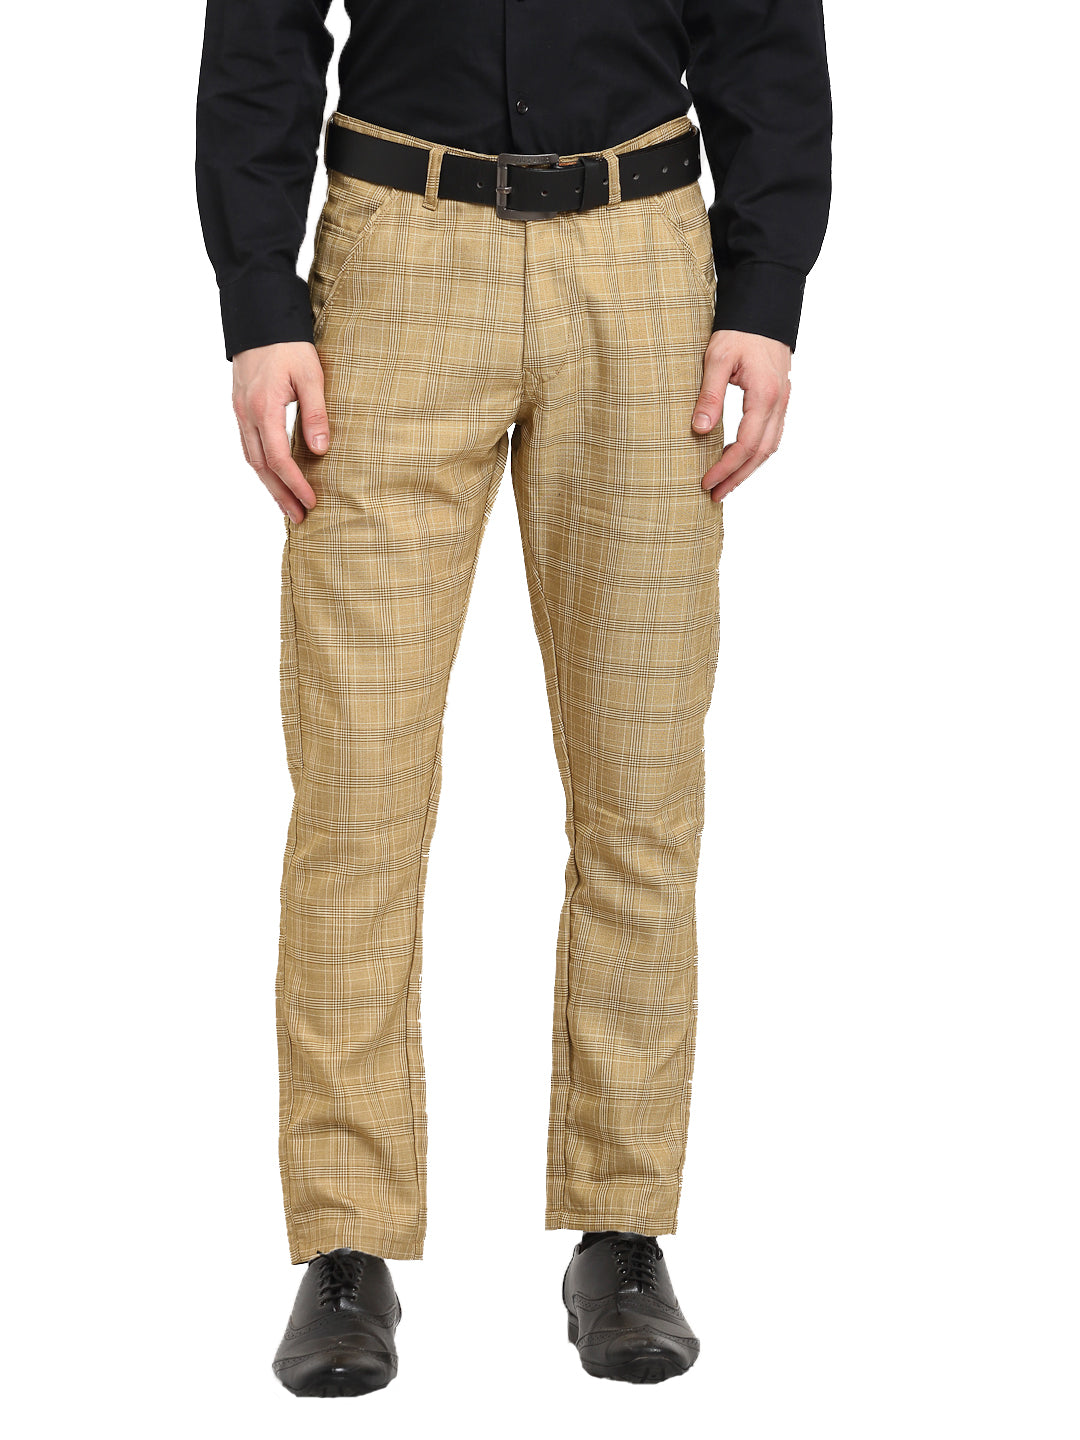 Pants For Men Fashion Formal Loose Cotton Plus Size Pocket Lace Up Trousers  - Walmart.com